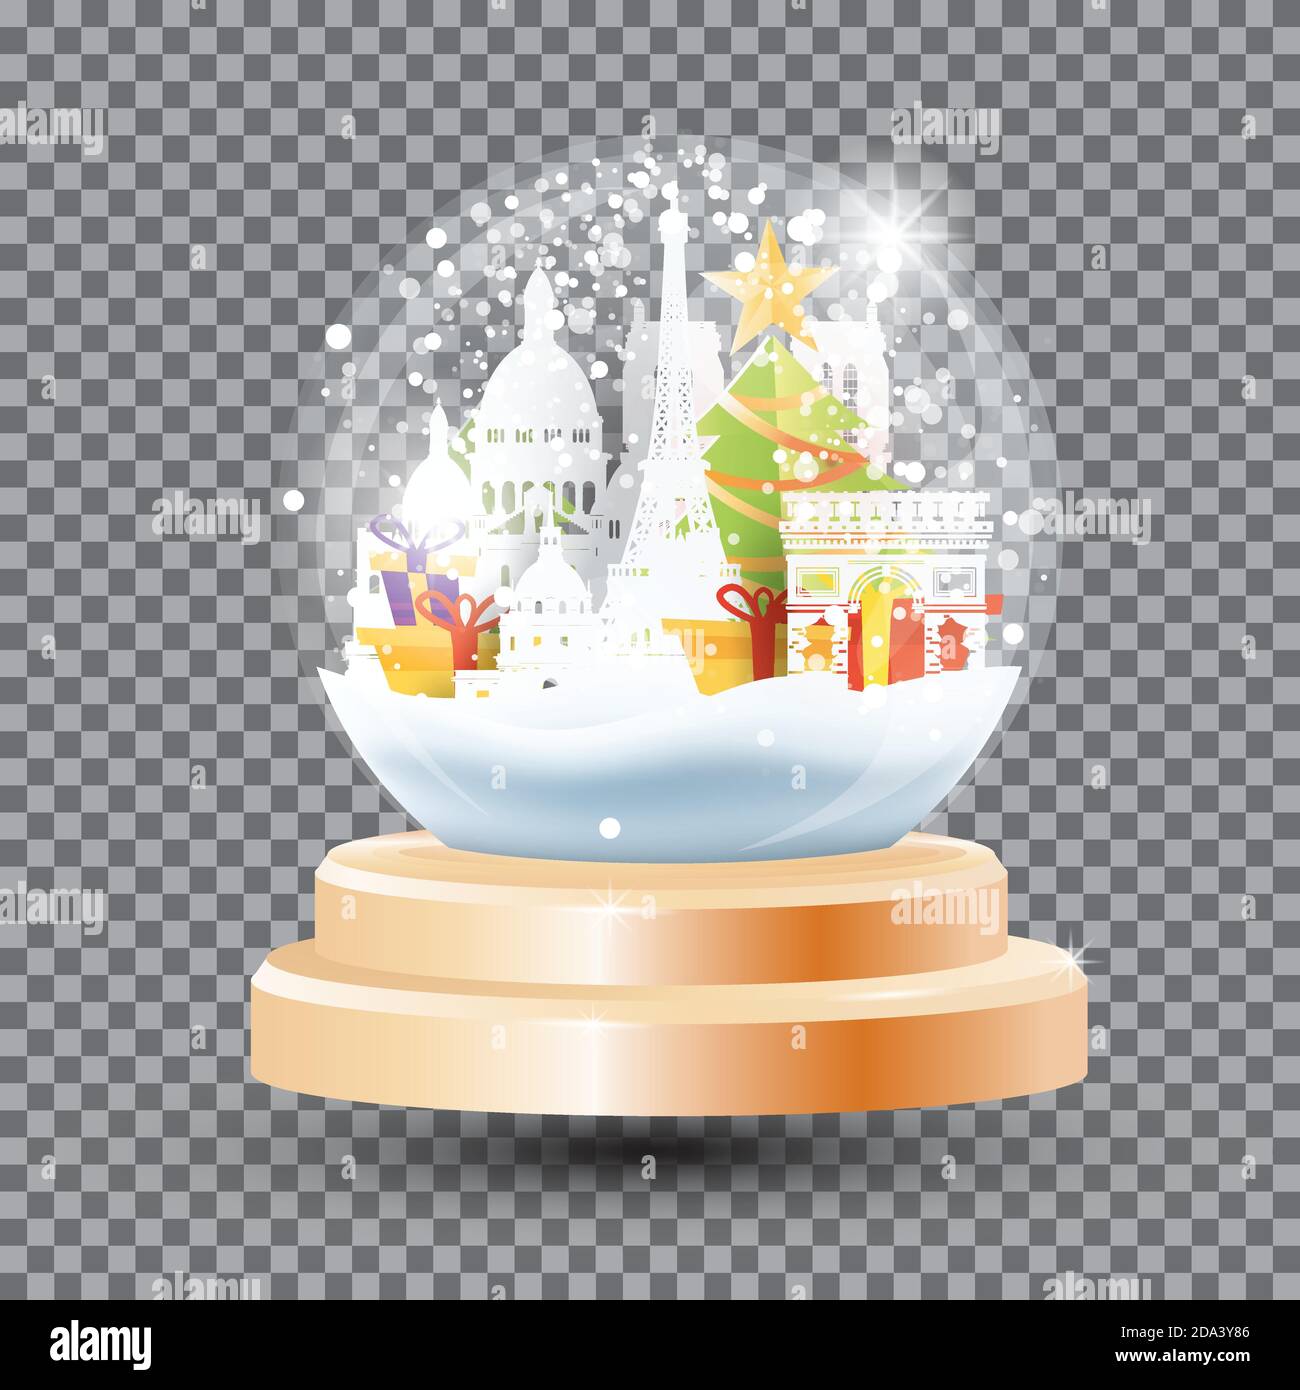 Magic Christmas Crystal Ball con monumenti storici di Parigi, scatole regalo e l'albero dell'Abete. Illustrazione vettoriale. Palla da neve in vetro souvenir su griglia trasparente. Singolo Illustrazione Vettoriale